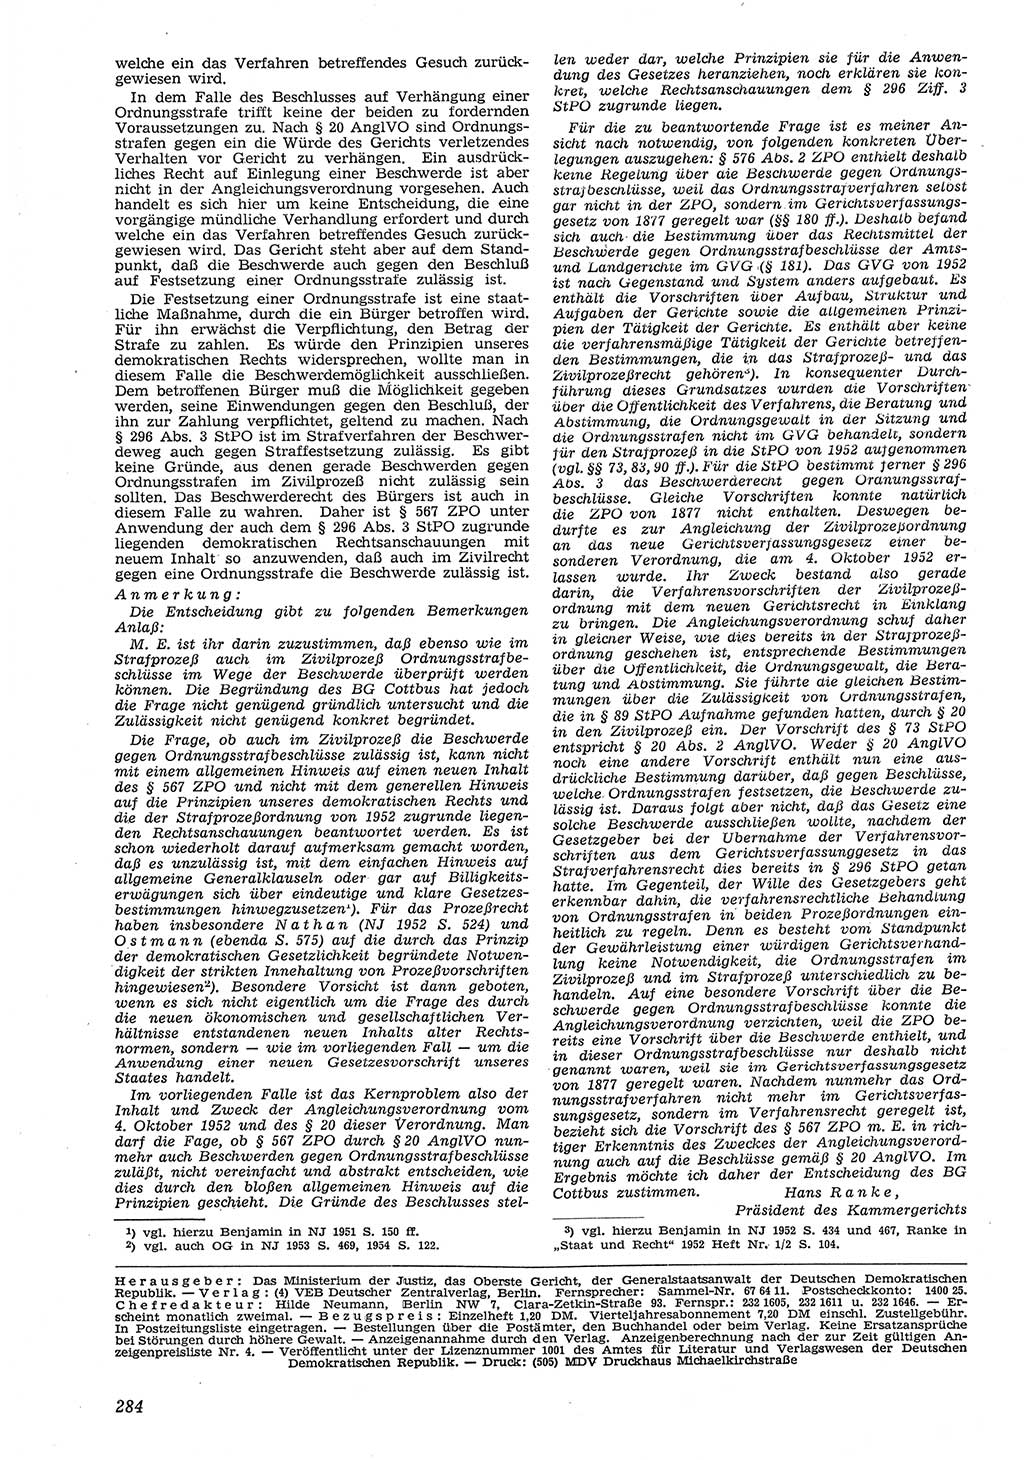 Neue Justiz (NJ), Zeitschrift für Recht und Rechtswissenschaft [Deutsche Demokratische Republik (DDR)], 8. Jahrgang 1954, Seite 284 (NJ DDR 1954, S. 284)